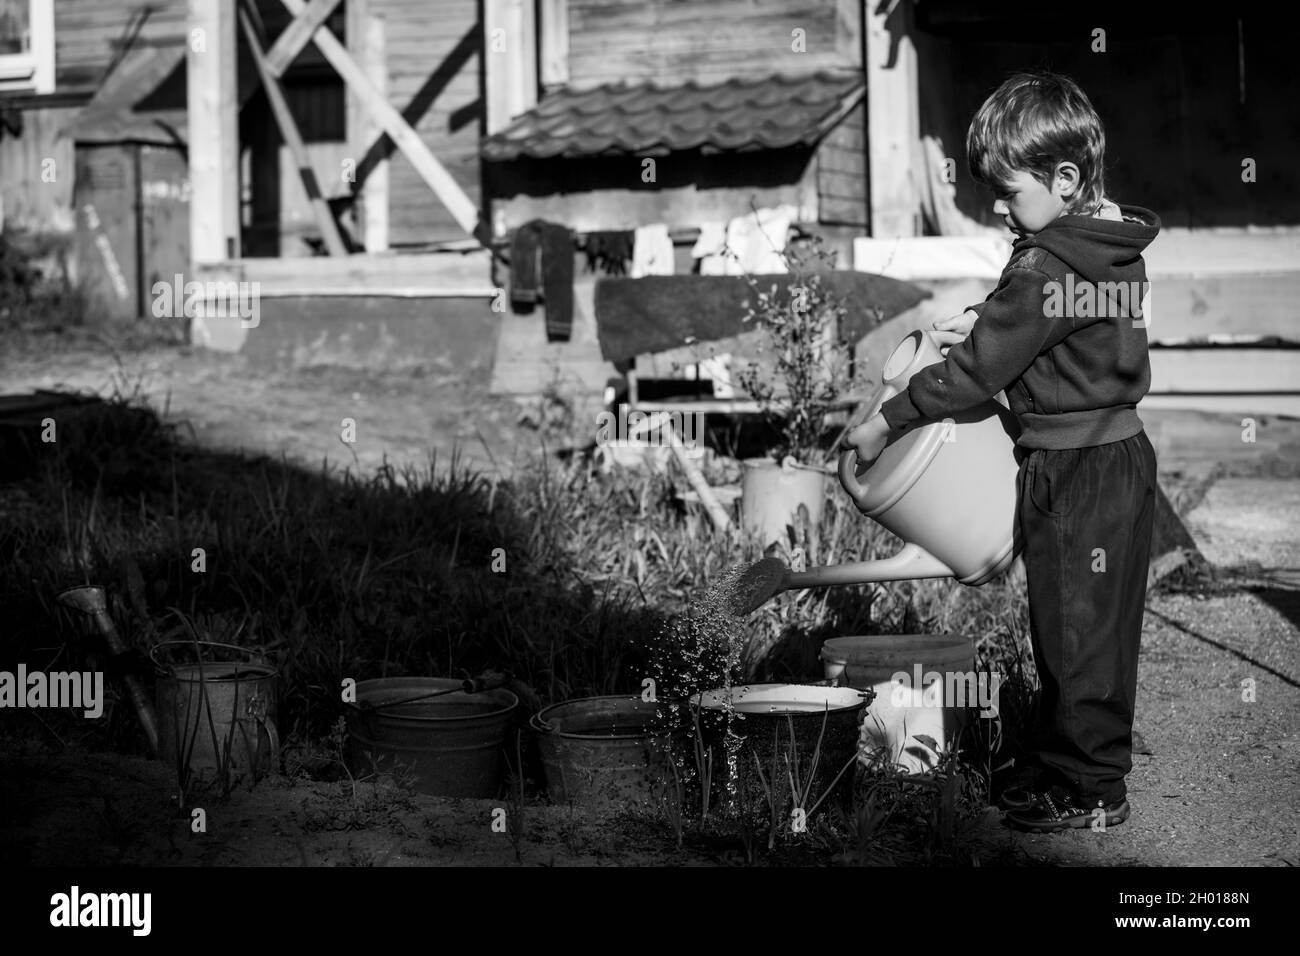 Ein kleiner Junge wässert die Betten im Dorf mit einer Gießkannen. Schwarzweiß-Foto. Stockfoto